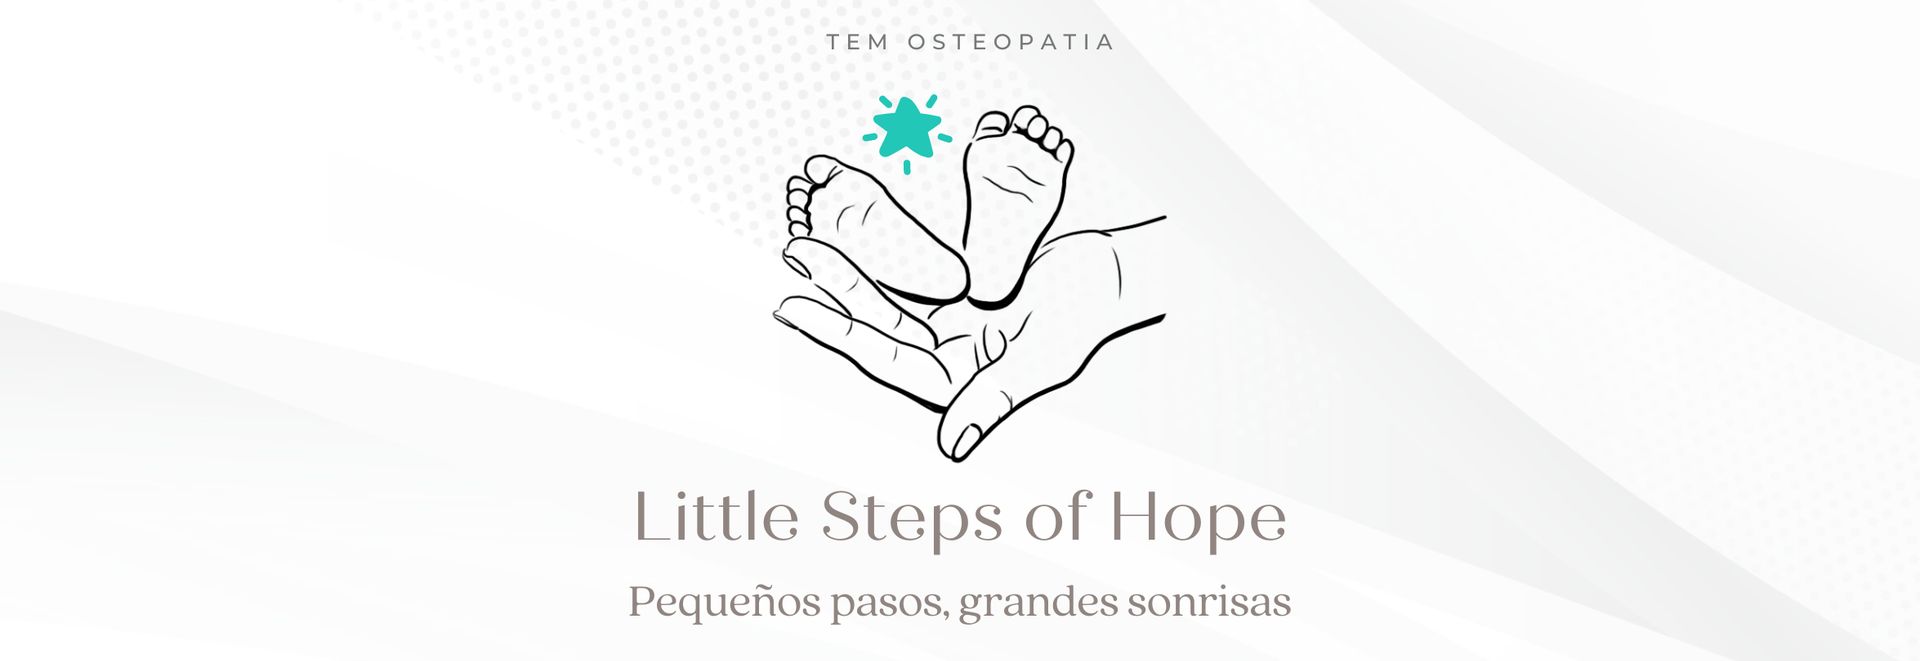 Proyecto de voluntariado Little Steps of Hopen valencia TEM osteopatia Centro Osteopático